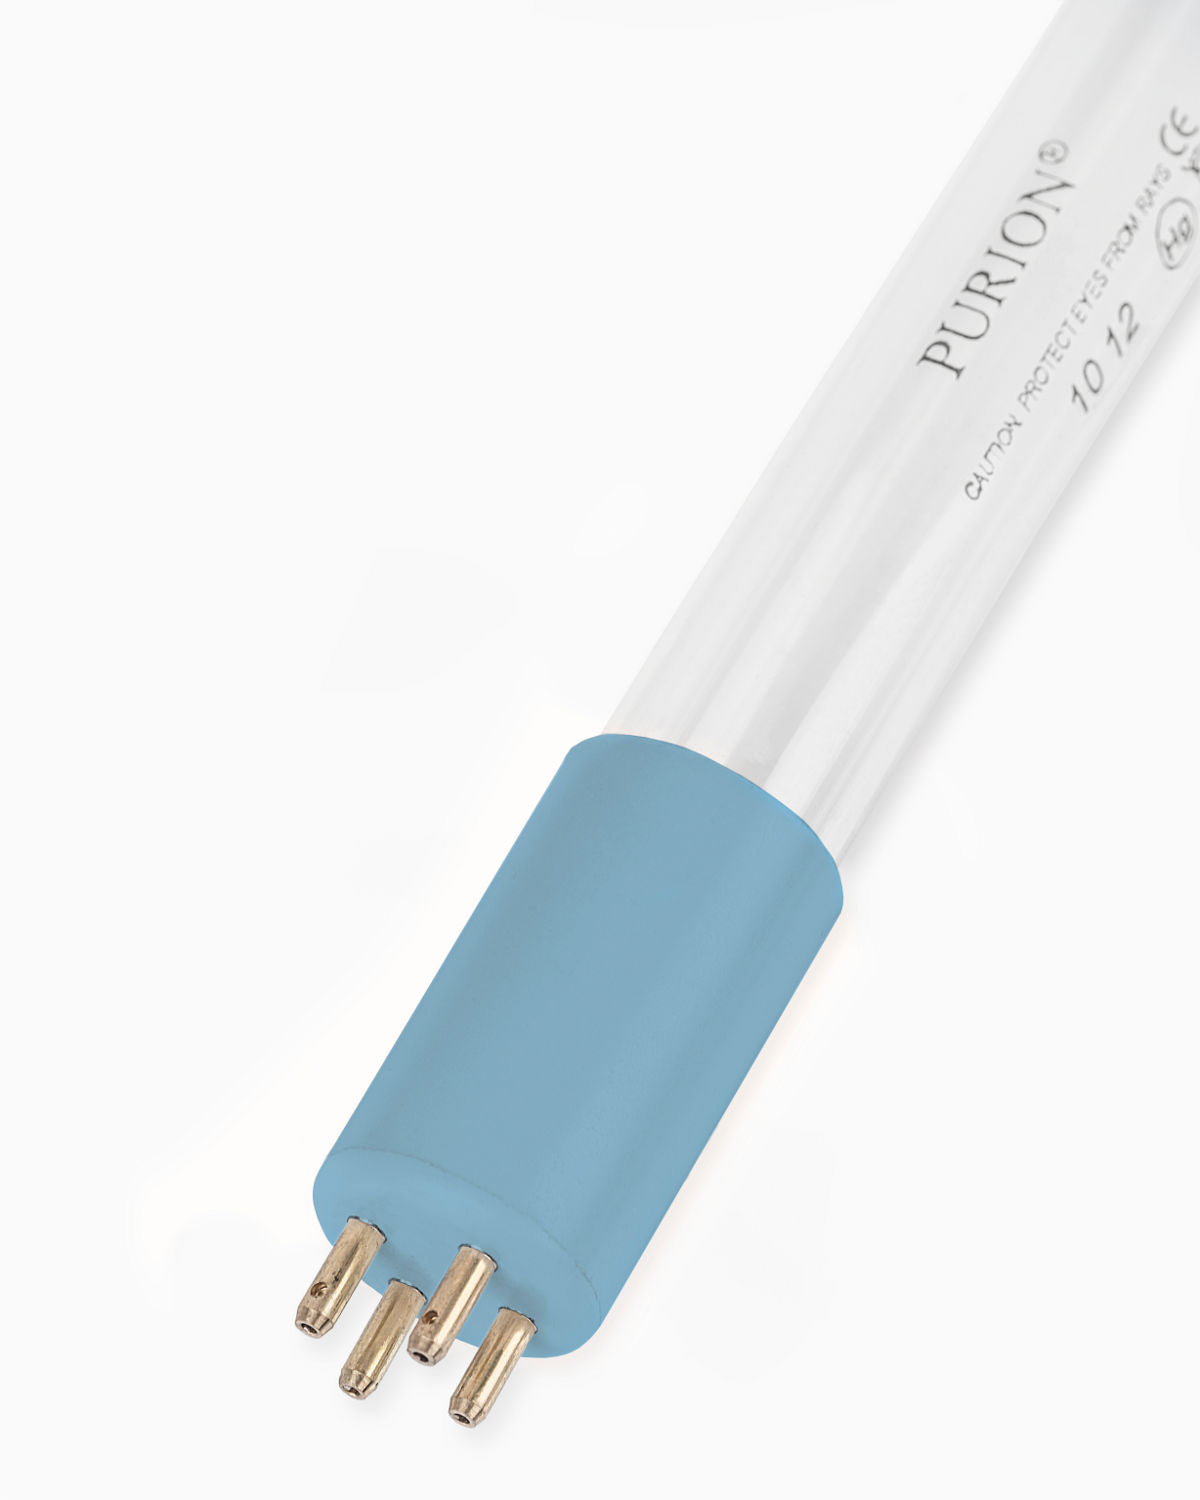 Eine PURION 2501 DUAL OTC Plus UV-C-Desinfektionslampe in blau auf einem weißen Hintergrund von PURION GmbH.